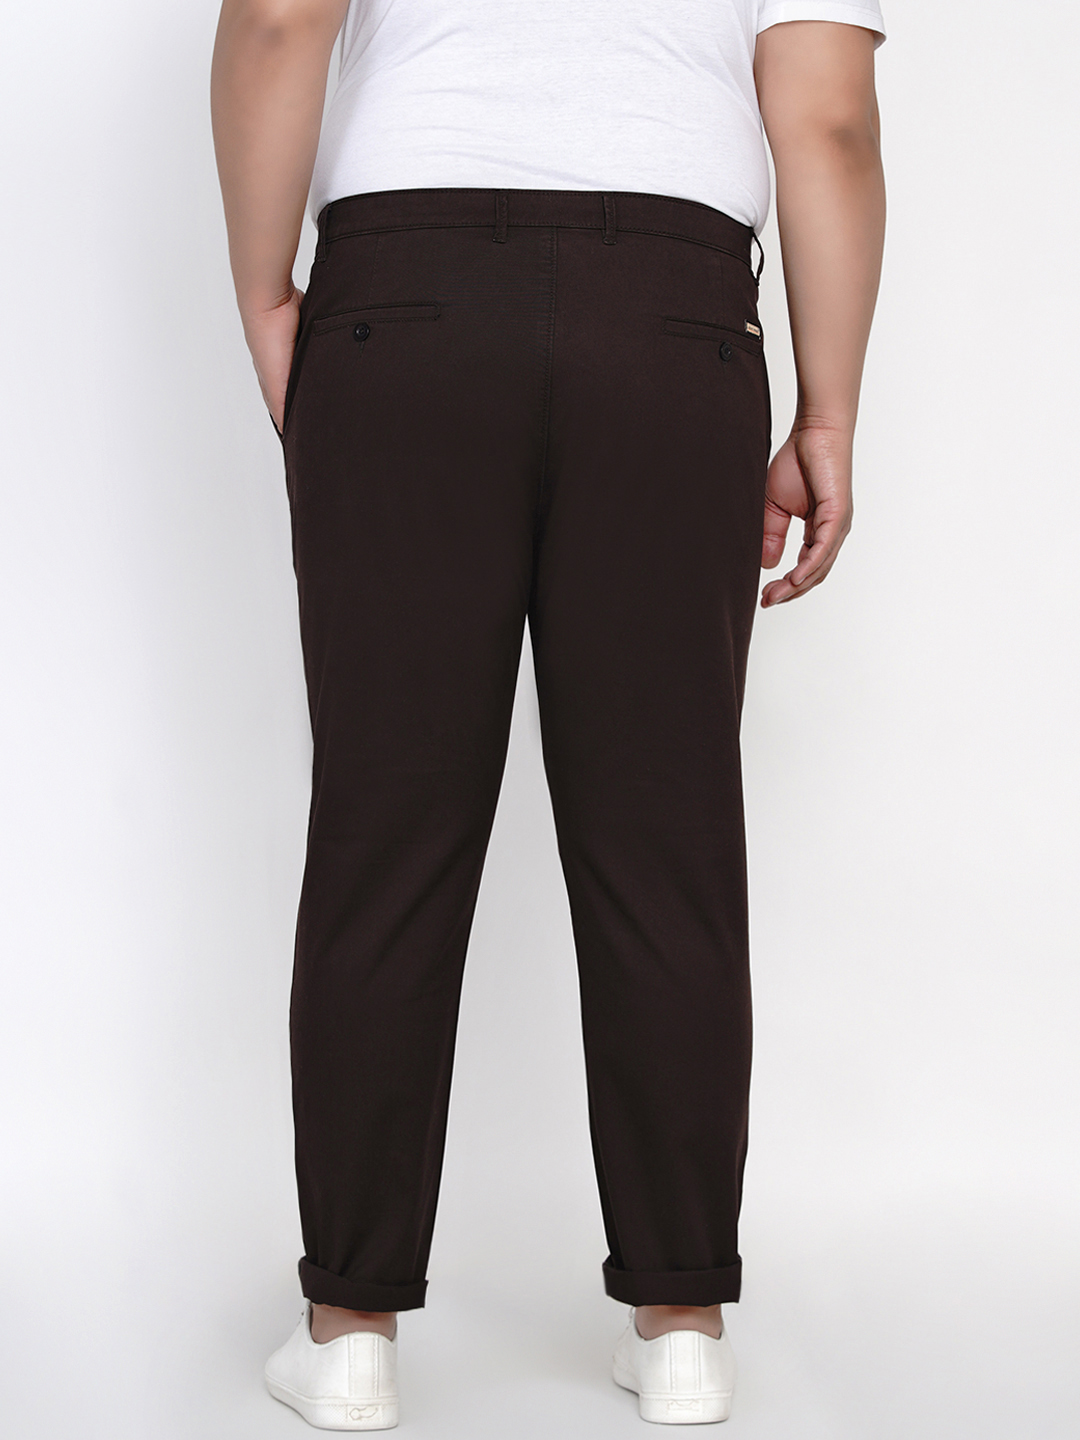 bottomwear/trousers/JPTR2161H/jptr2161h-4.jpg